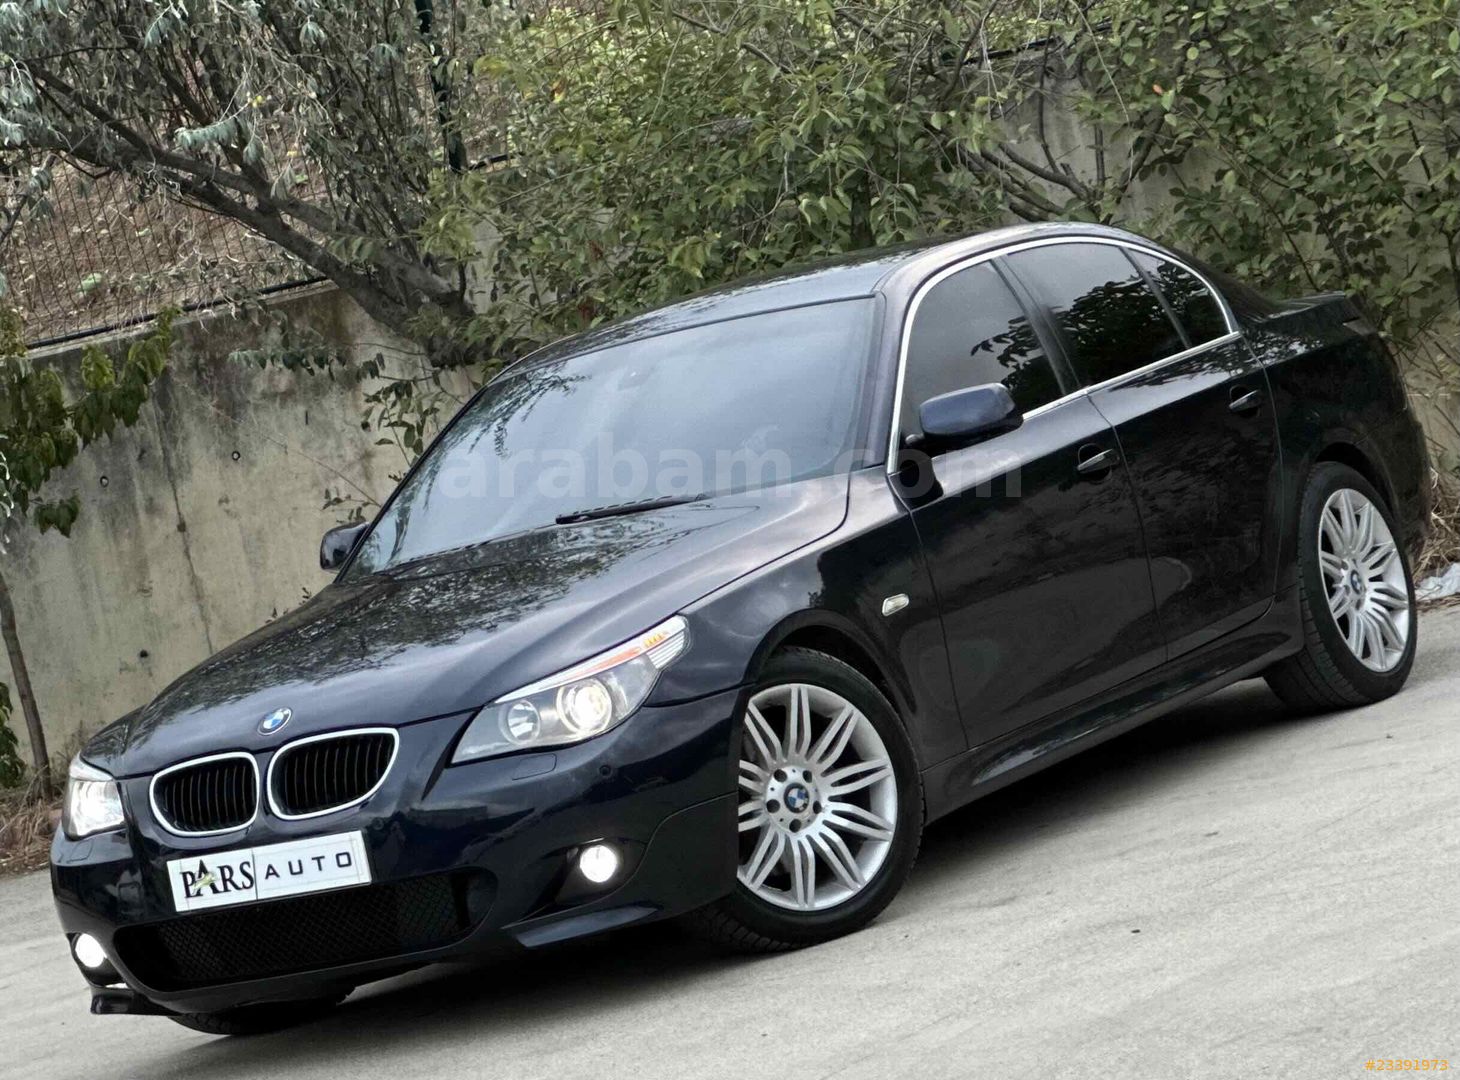 BMW E60  Bmw 5 serisi, Bmw serisi, Havalı arabalar